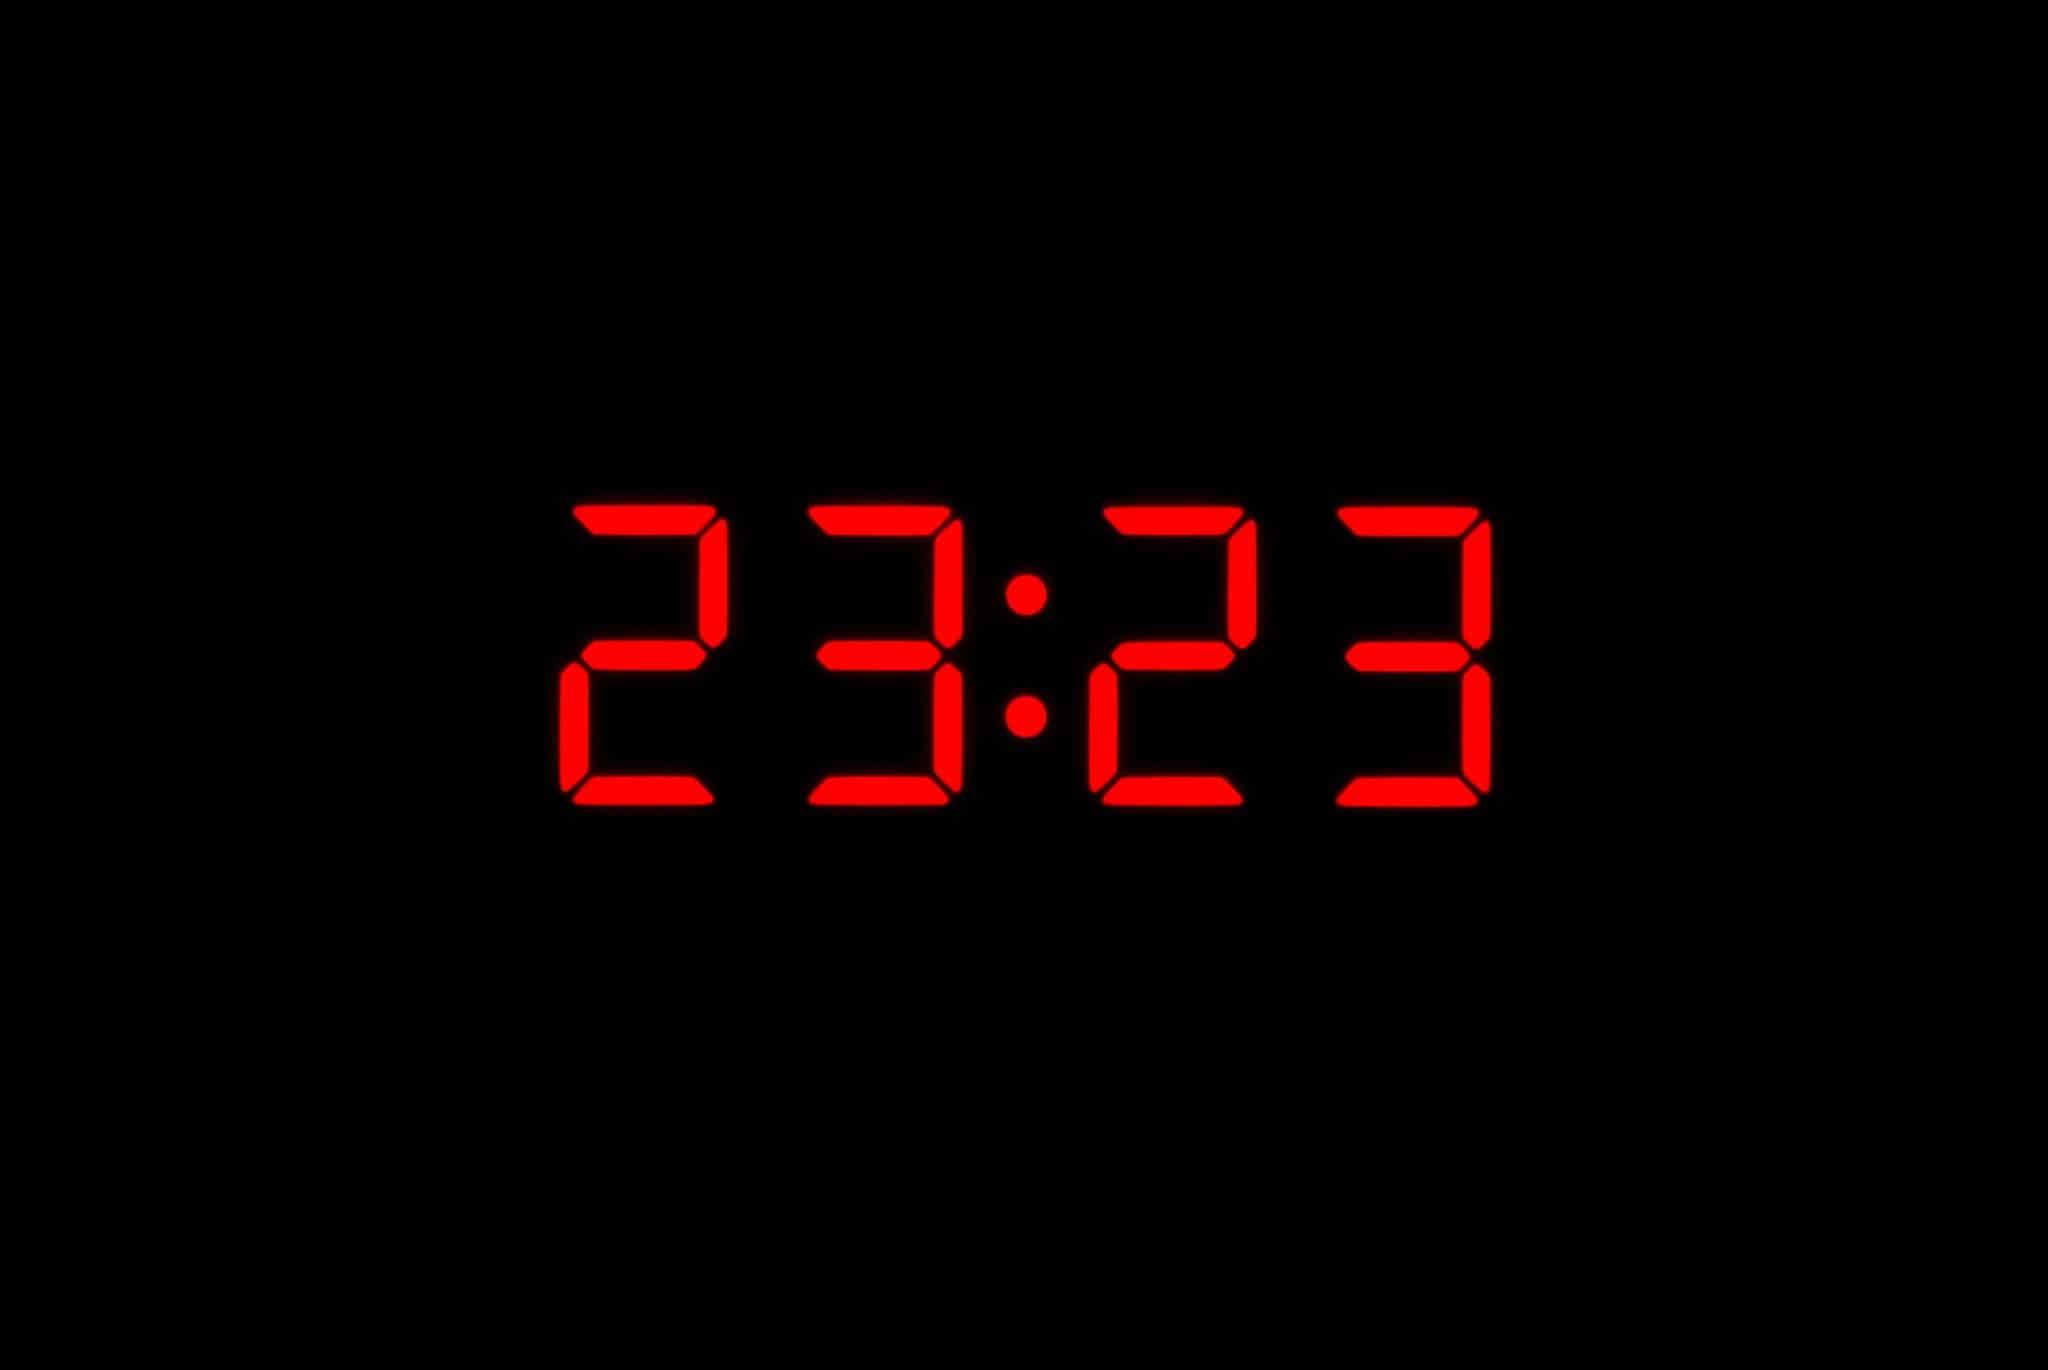 23:23: números coloridos em vermelho, típicos vistos em relógios. 